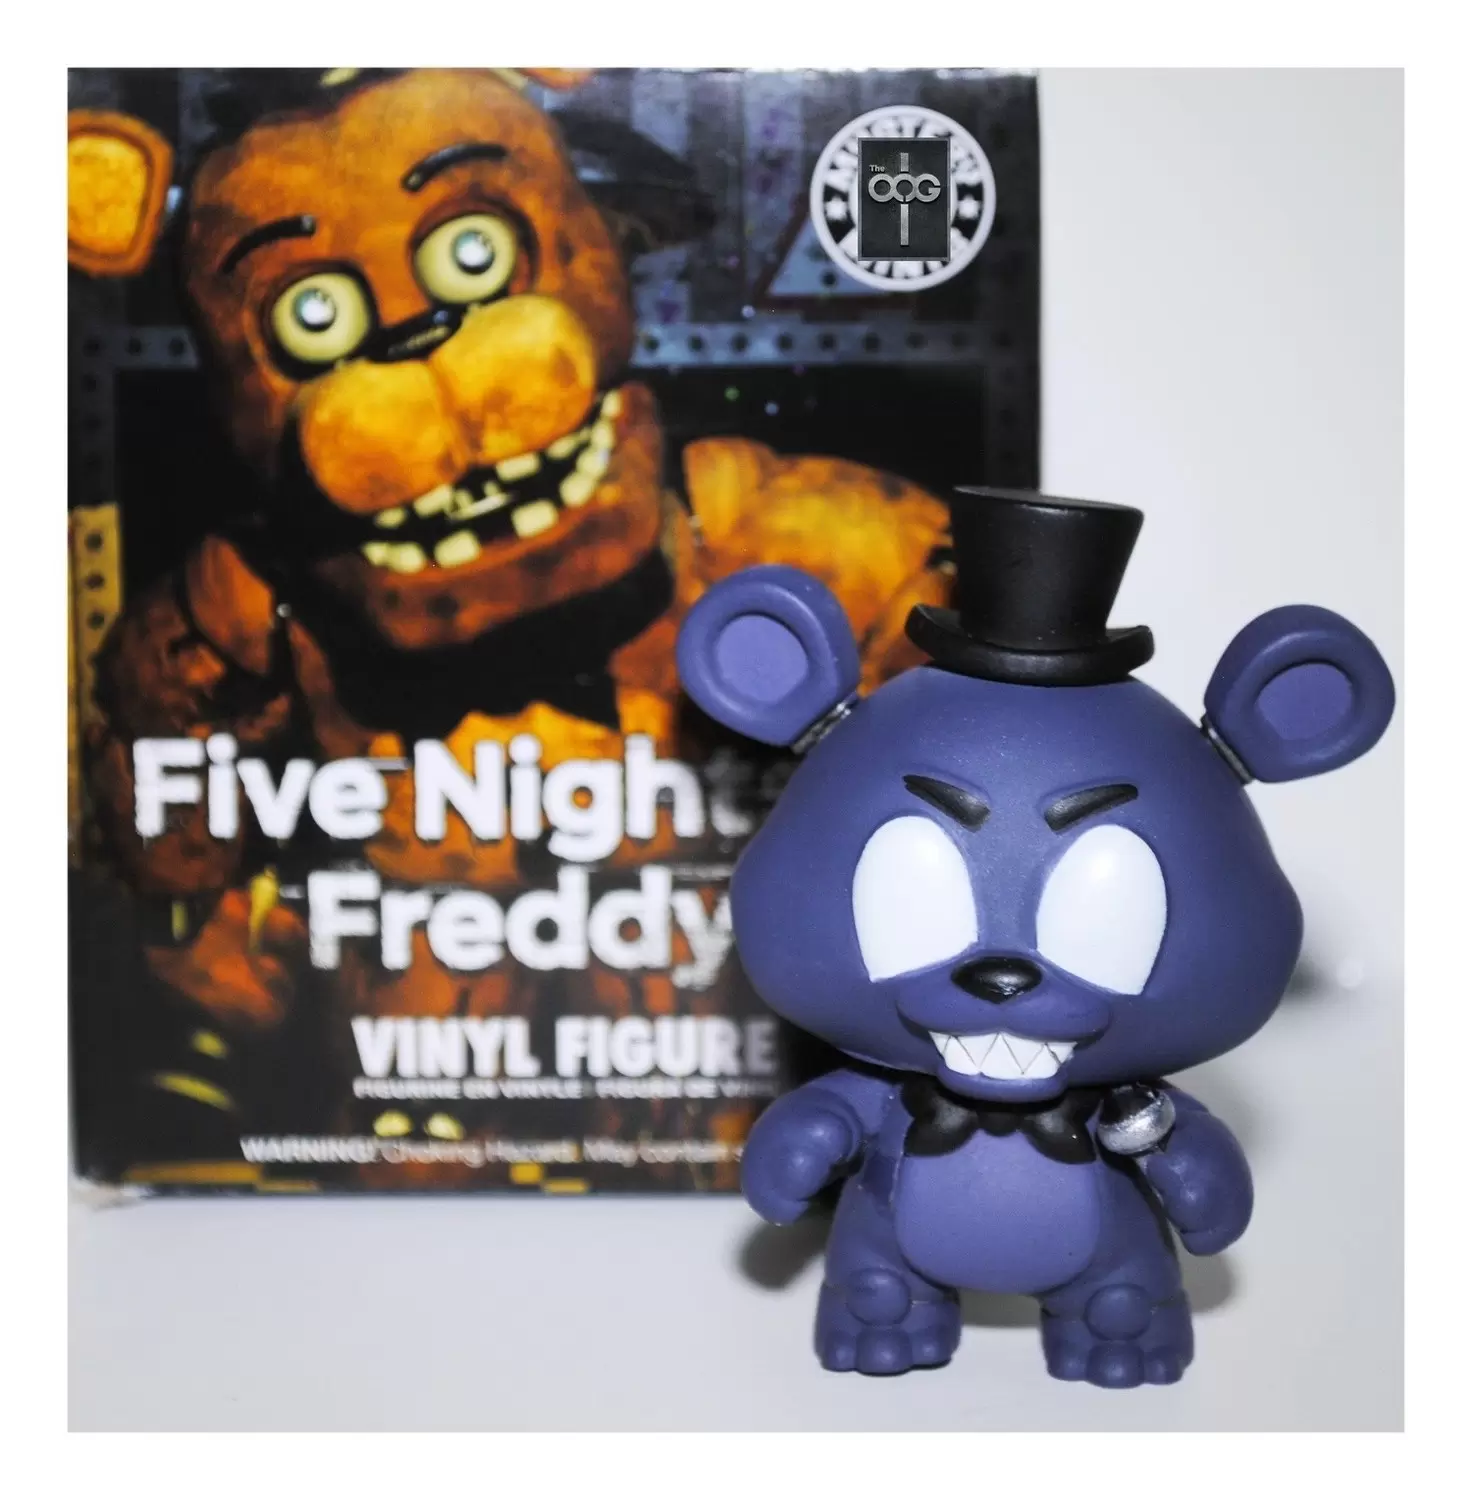  Funko Pop! Five Nights at Freddy's Shadow Freddy